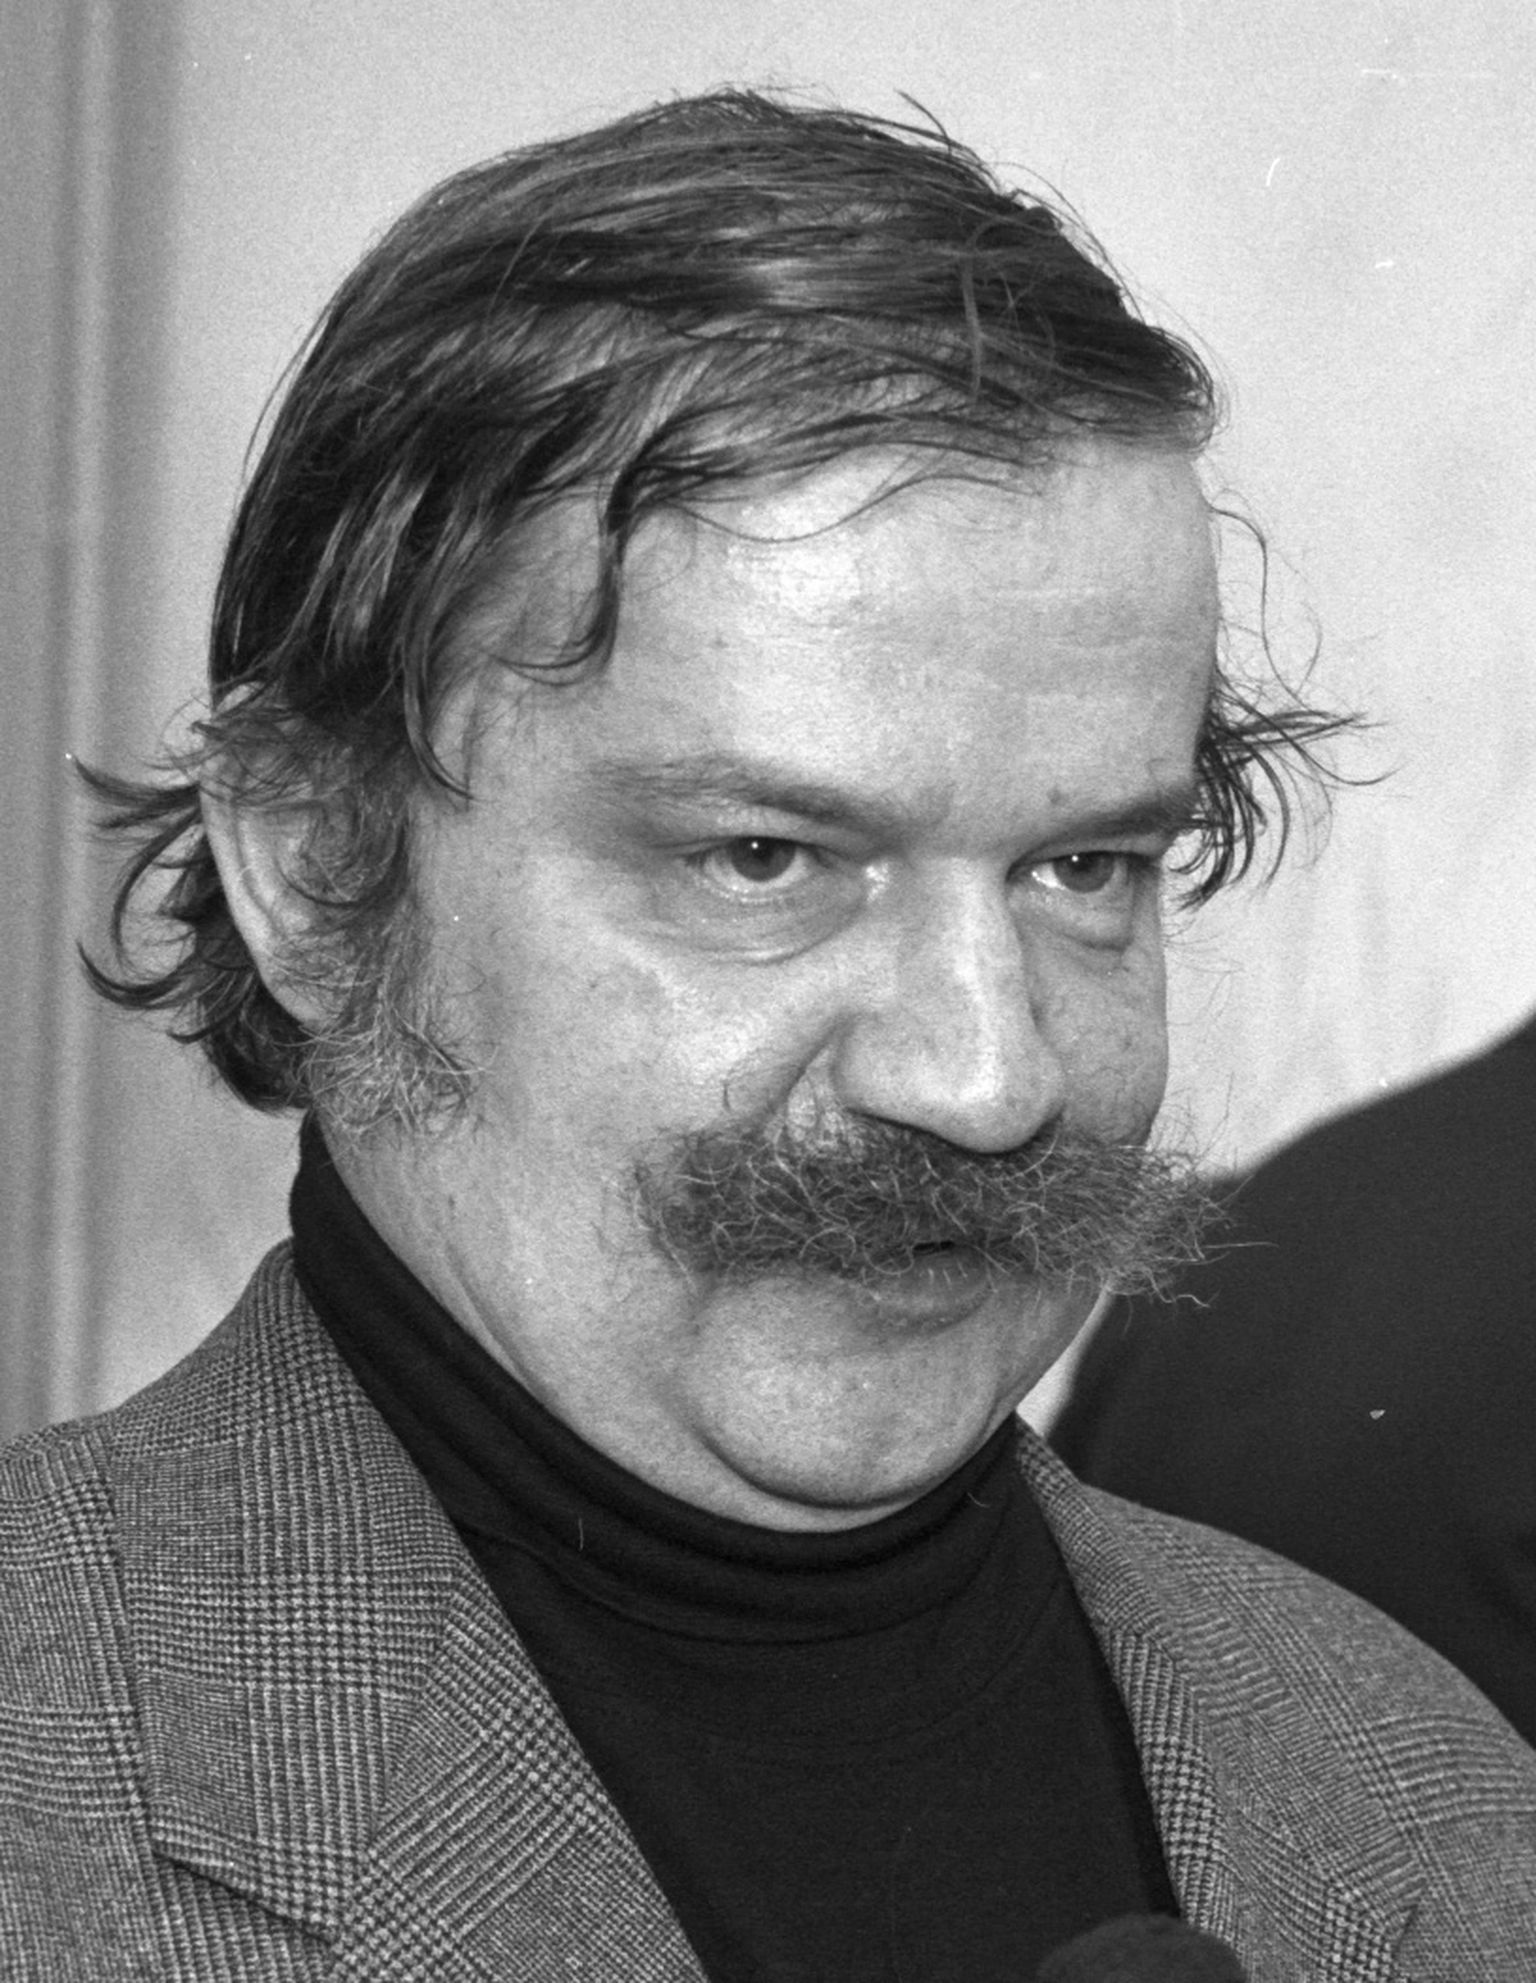 Peeter Olesk (25.12.1953 - 25.11.2021).